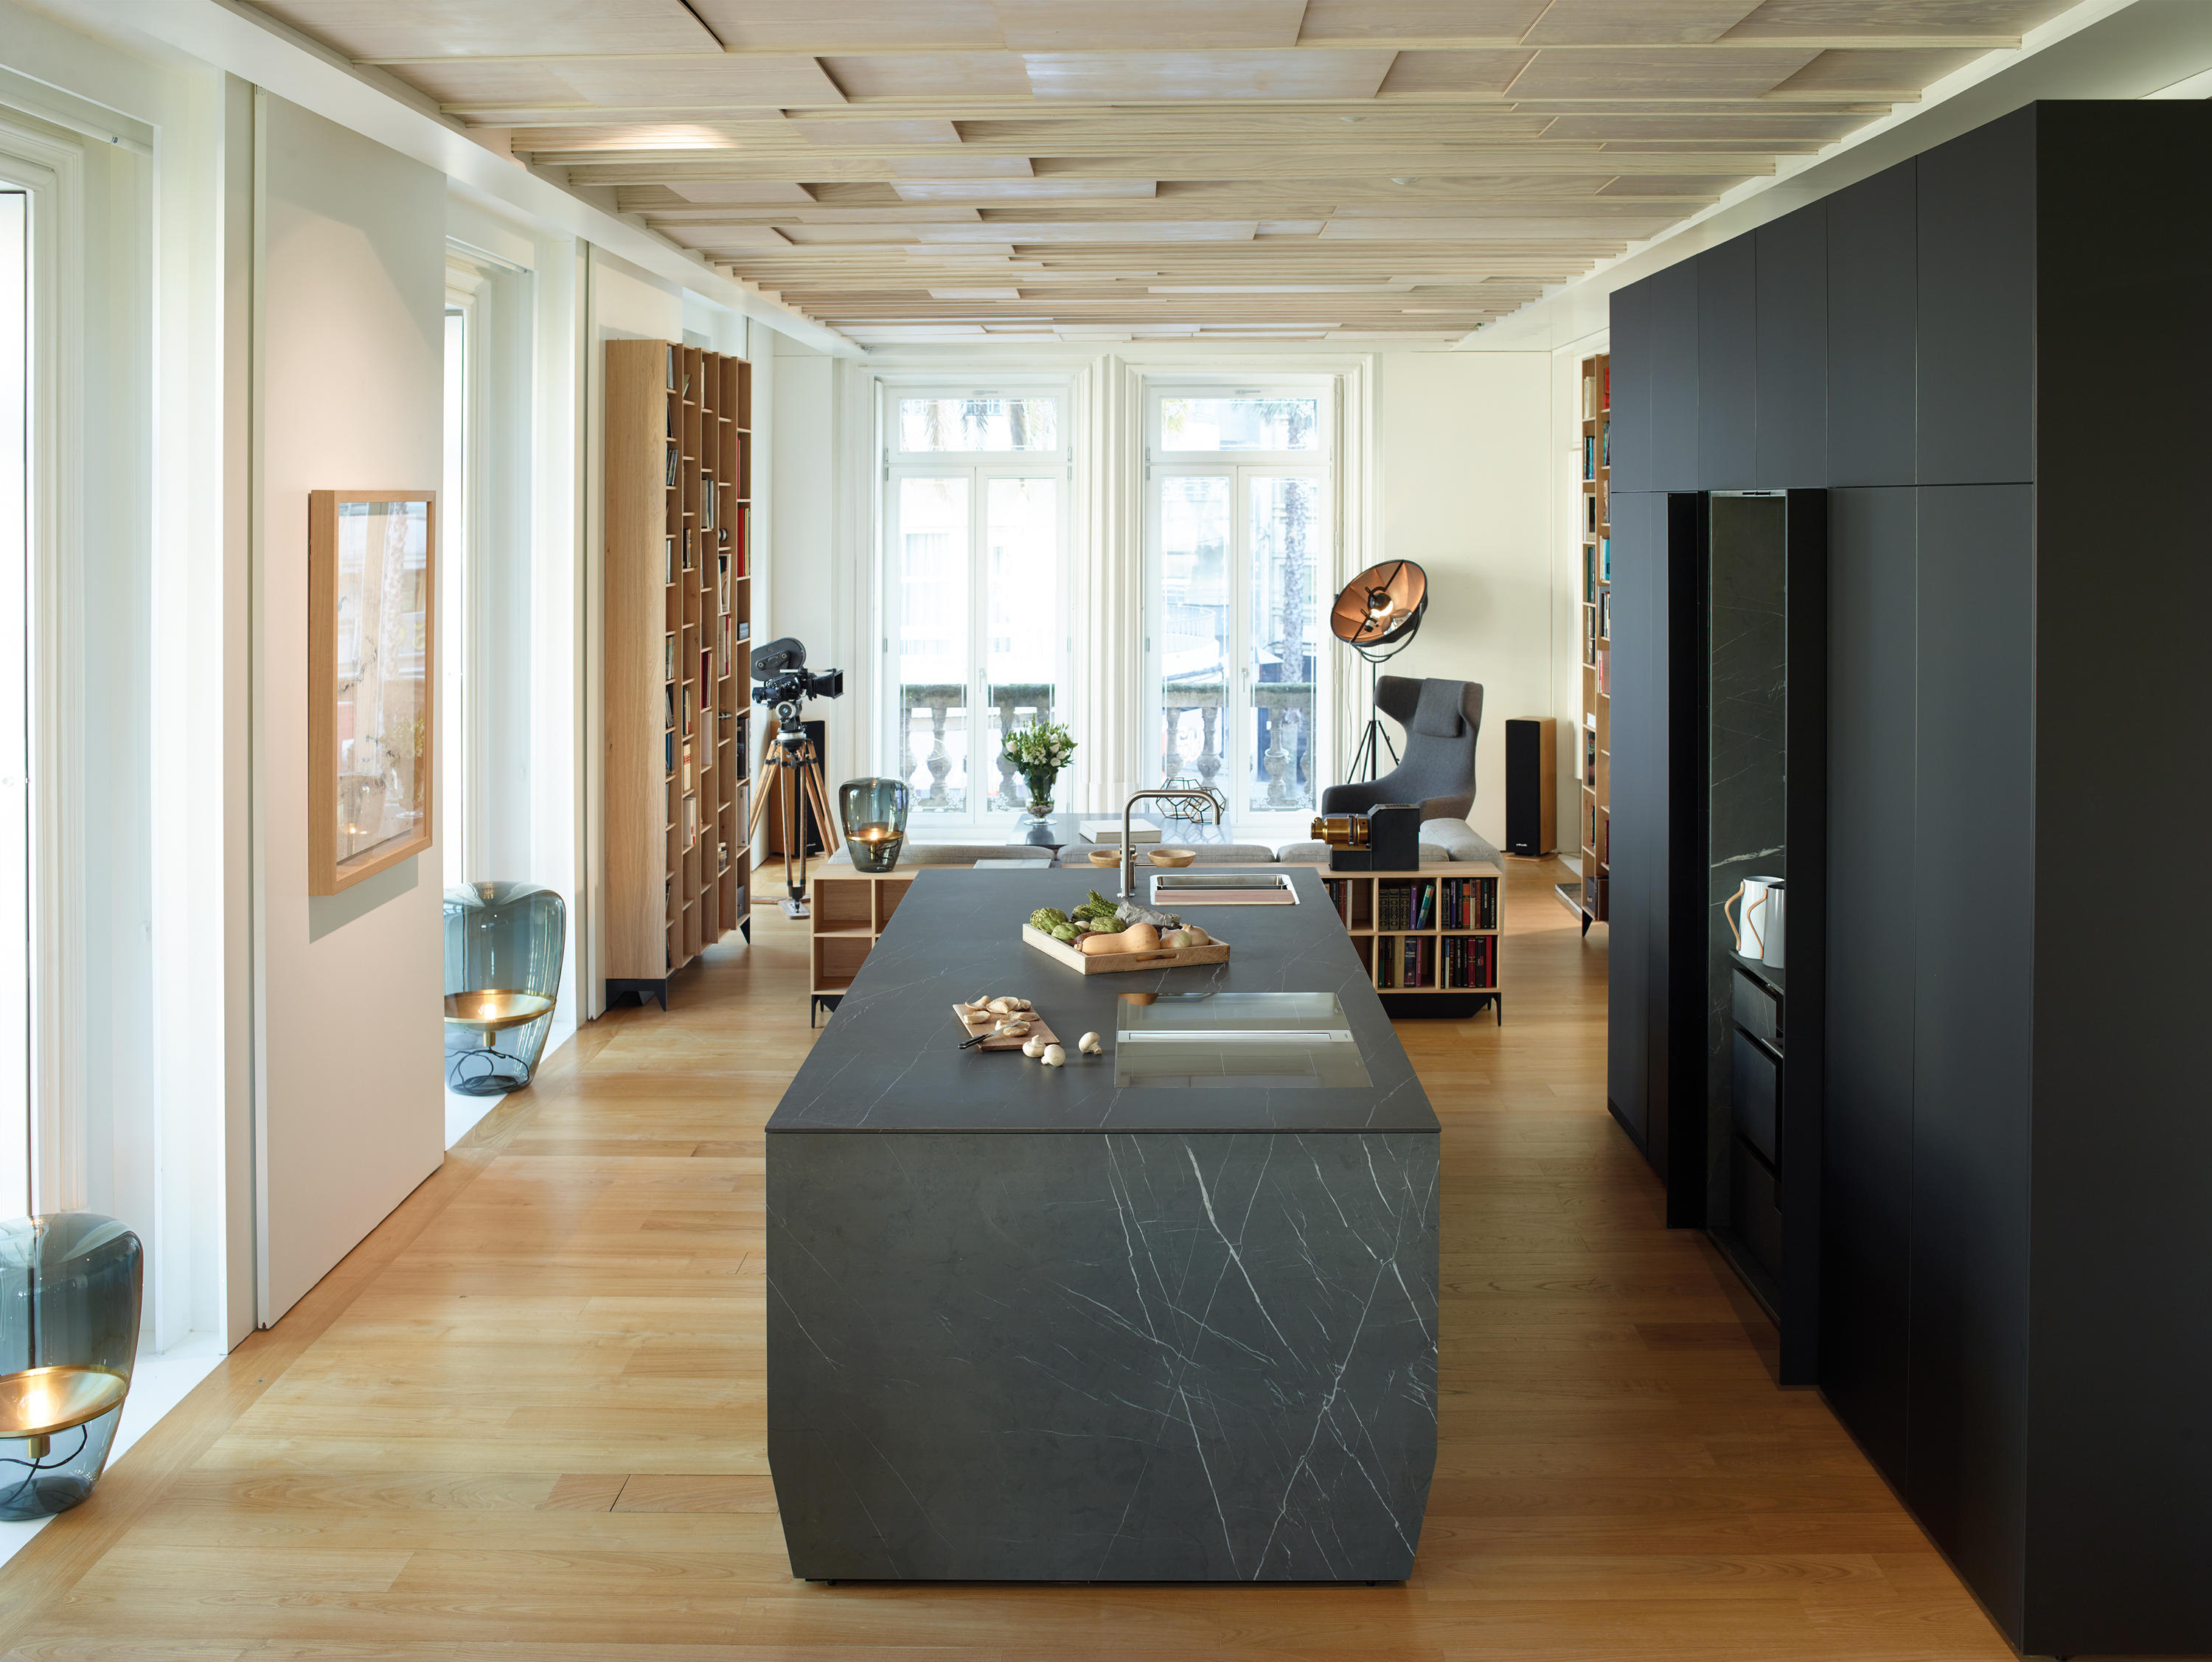 FINE Mármol Gris & muebles de diseño | Architonic